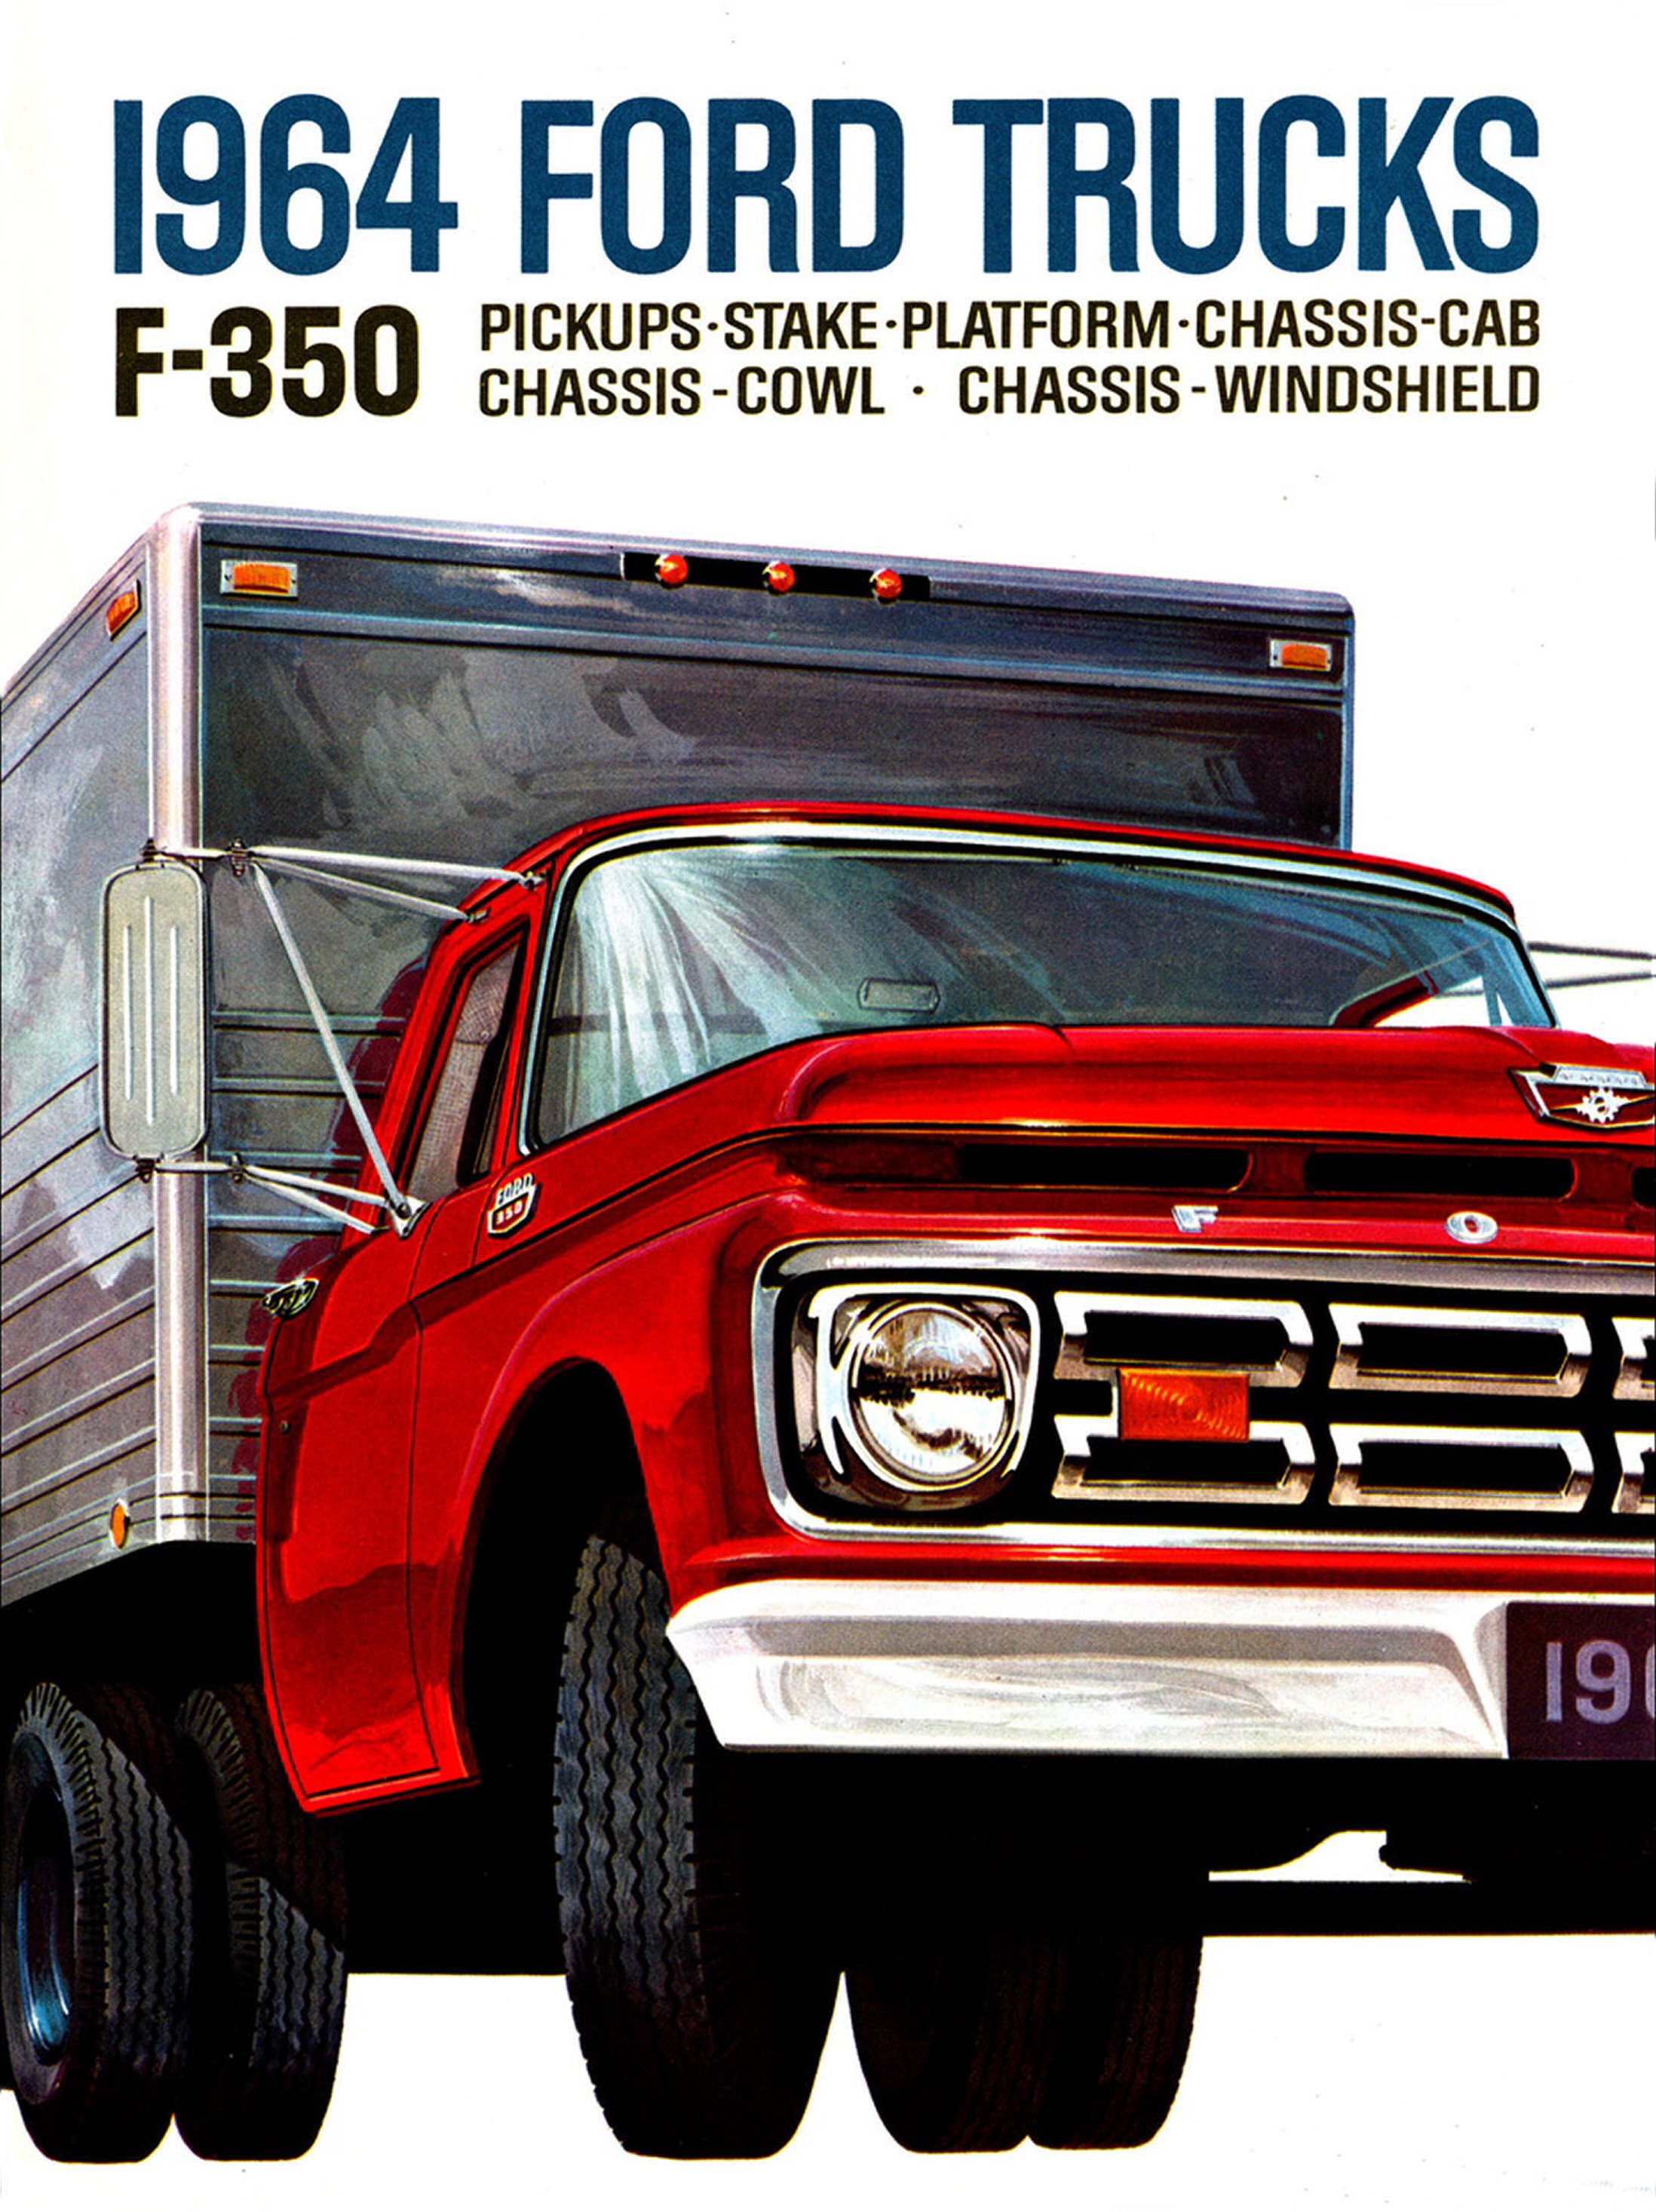 1964-Ford-F-350-Trucks_1.jpg-2023-8-6 14.5.21